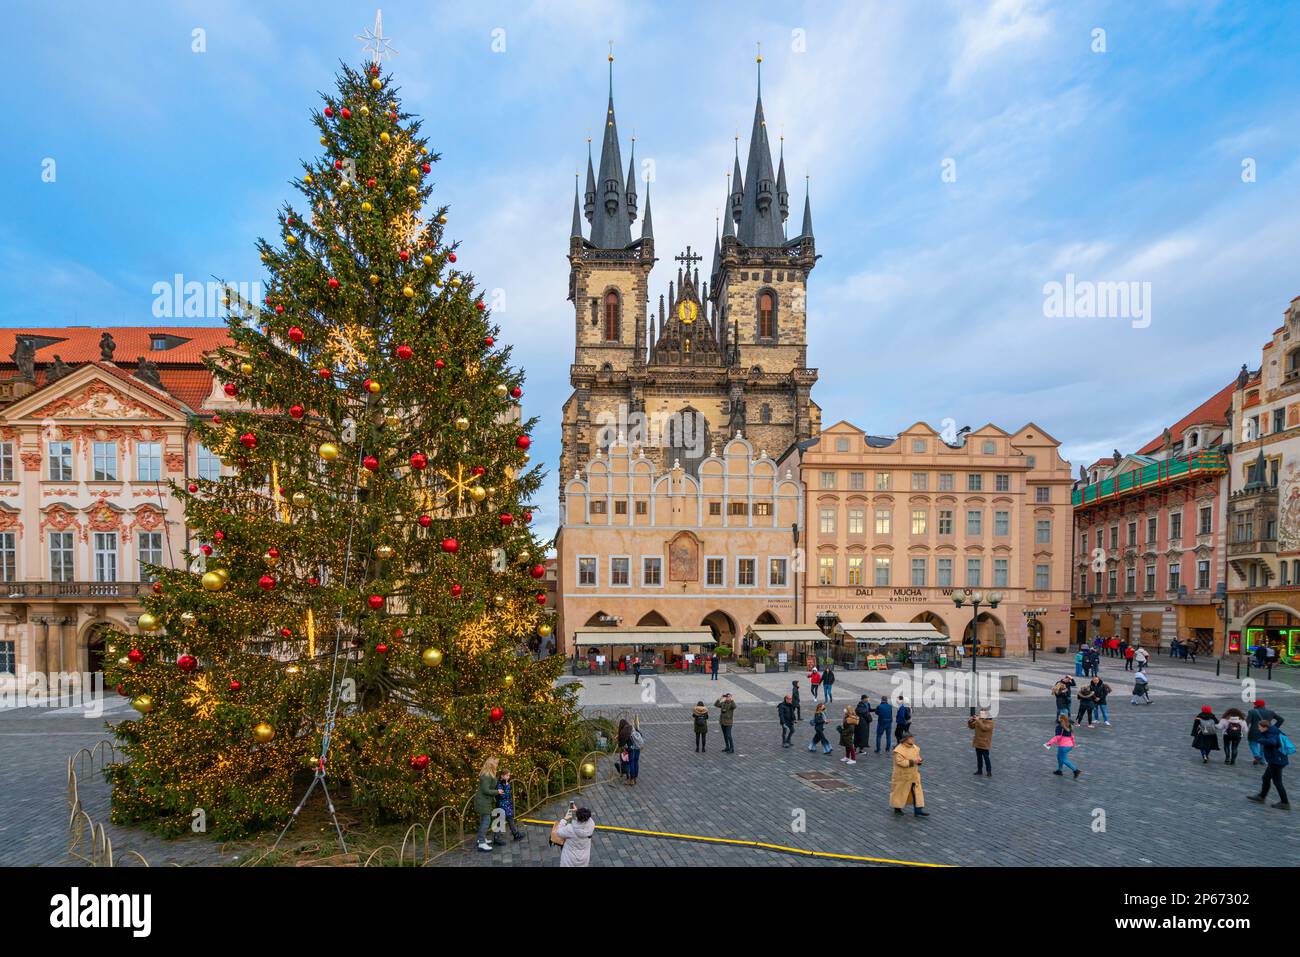 Weihnachtsbaum auf dem Altstädter Ring mit der Marienkirche vor Tyn, UNESCO, Altstadt von Prag, Prag, Tschechische Republik (Tschechien) Stockfoto